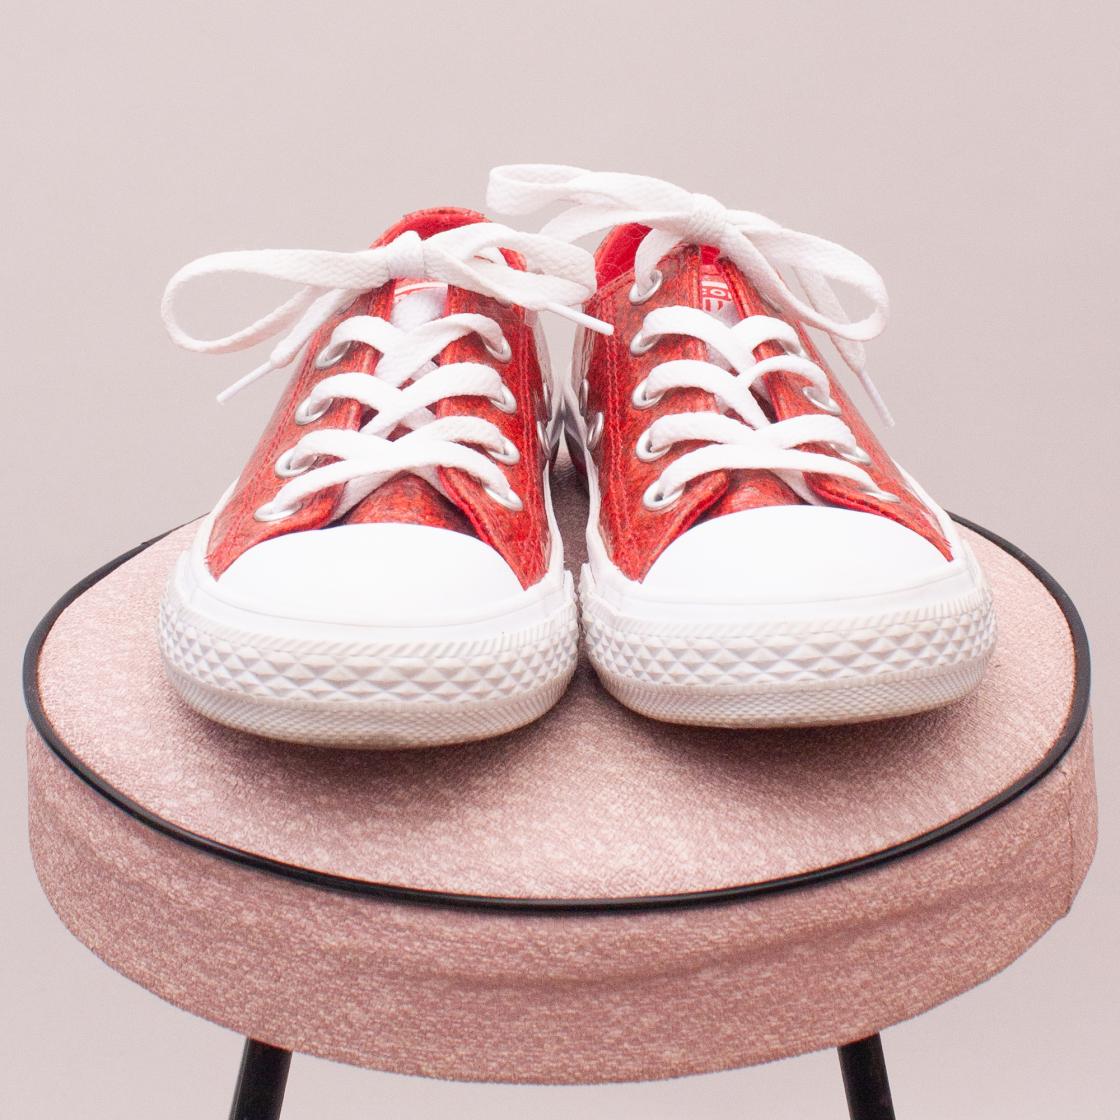 Converse Glitter Sneakers - EU 31 (Age 6 Approx.)